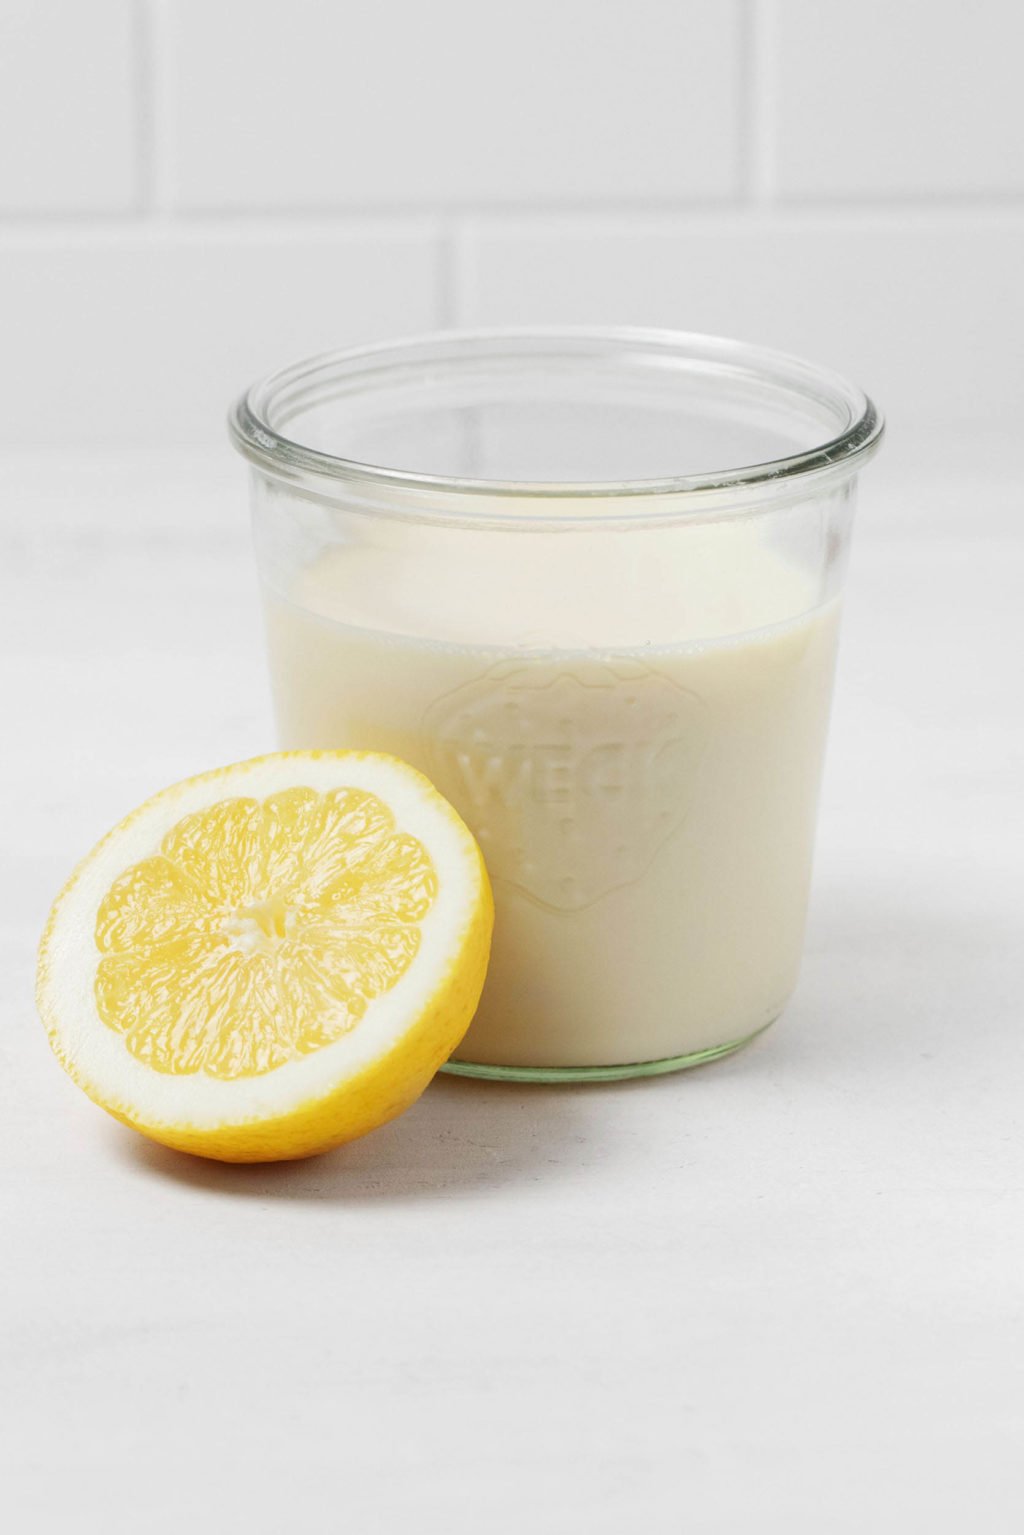 De helft van een gesneden citroen ligt naast een glazen pot gevuld met veganistische melk.